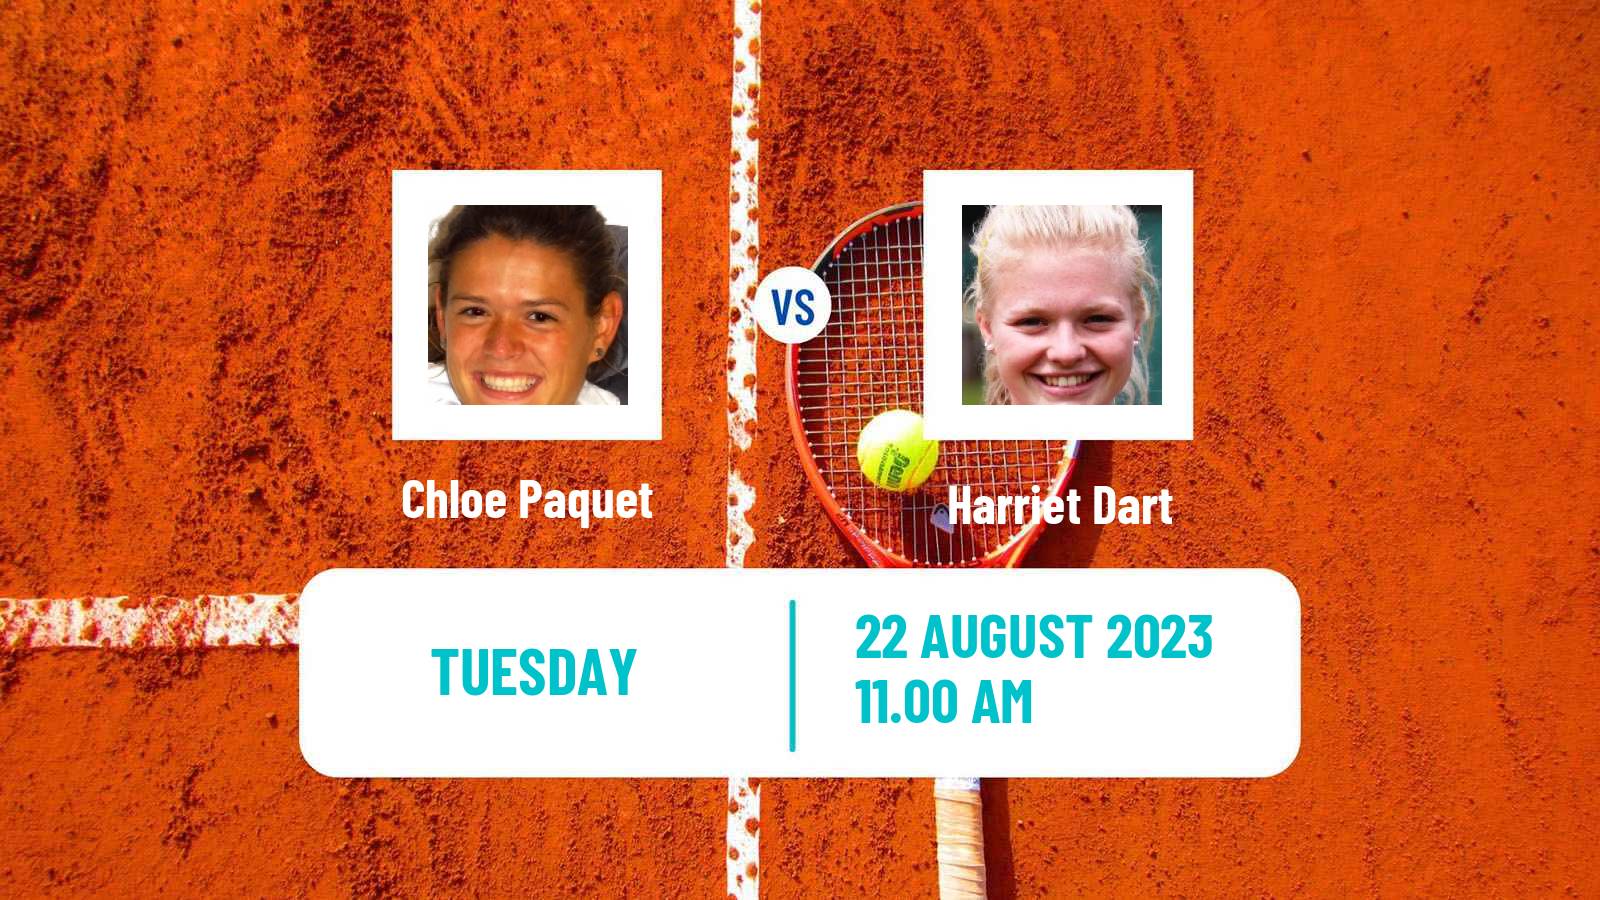 Tennis WTA US Open Chloe Paquet - Harriet Dart